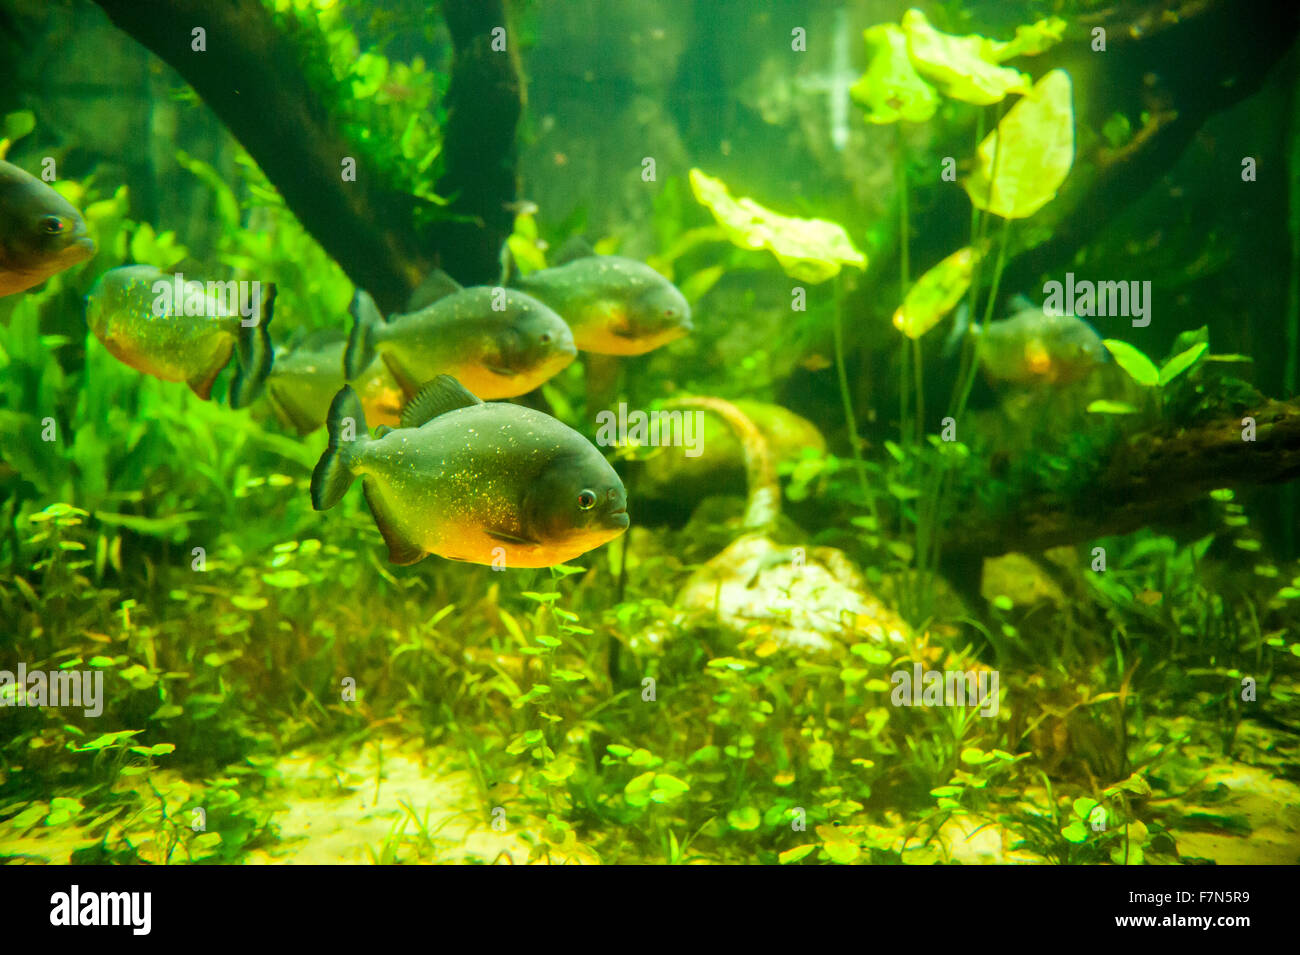 Piranha fish underwater in aquarium Stock Photo